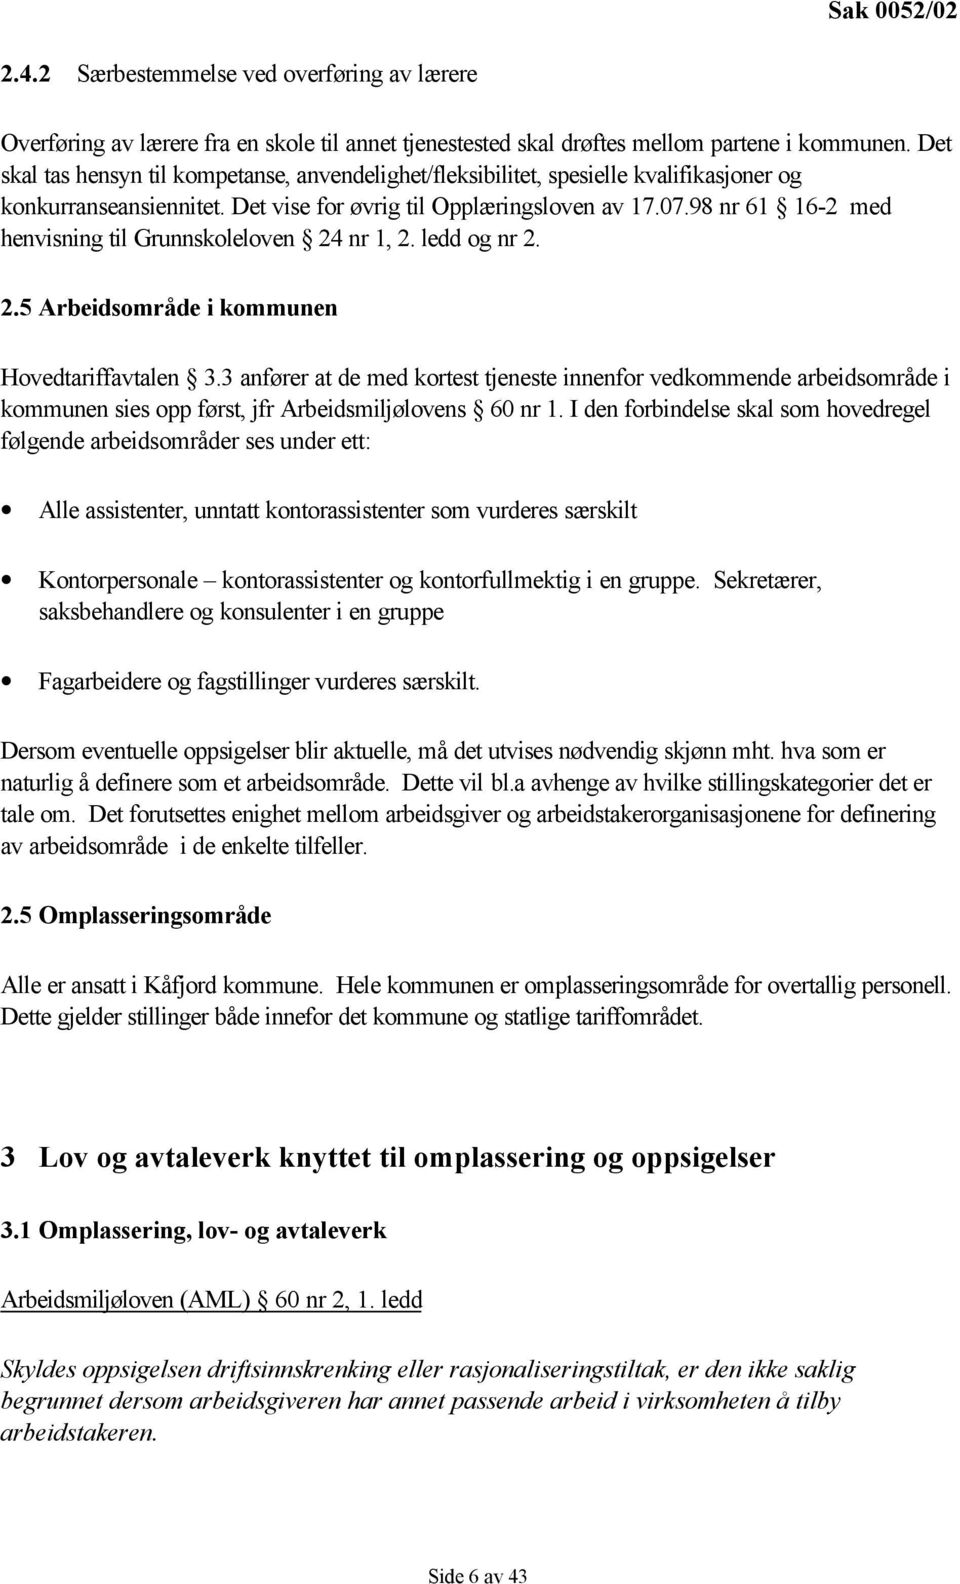 98 nr 61 16-2 med henvisning til Grunnskoleloven 24 nr 1, 2. ledd og nr 2. 2.5 Arbeidsområde i kommunen Hovedtariffavtalen 3.